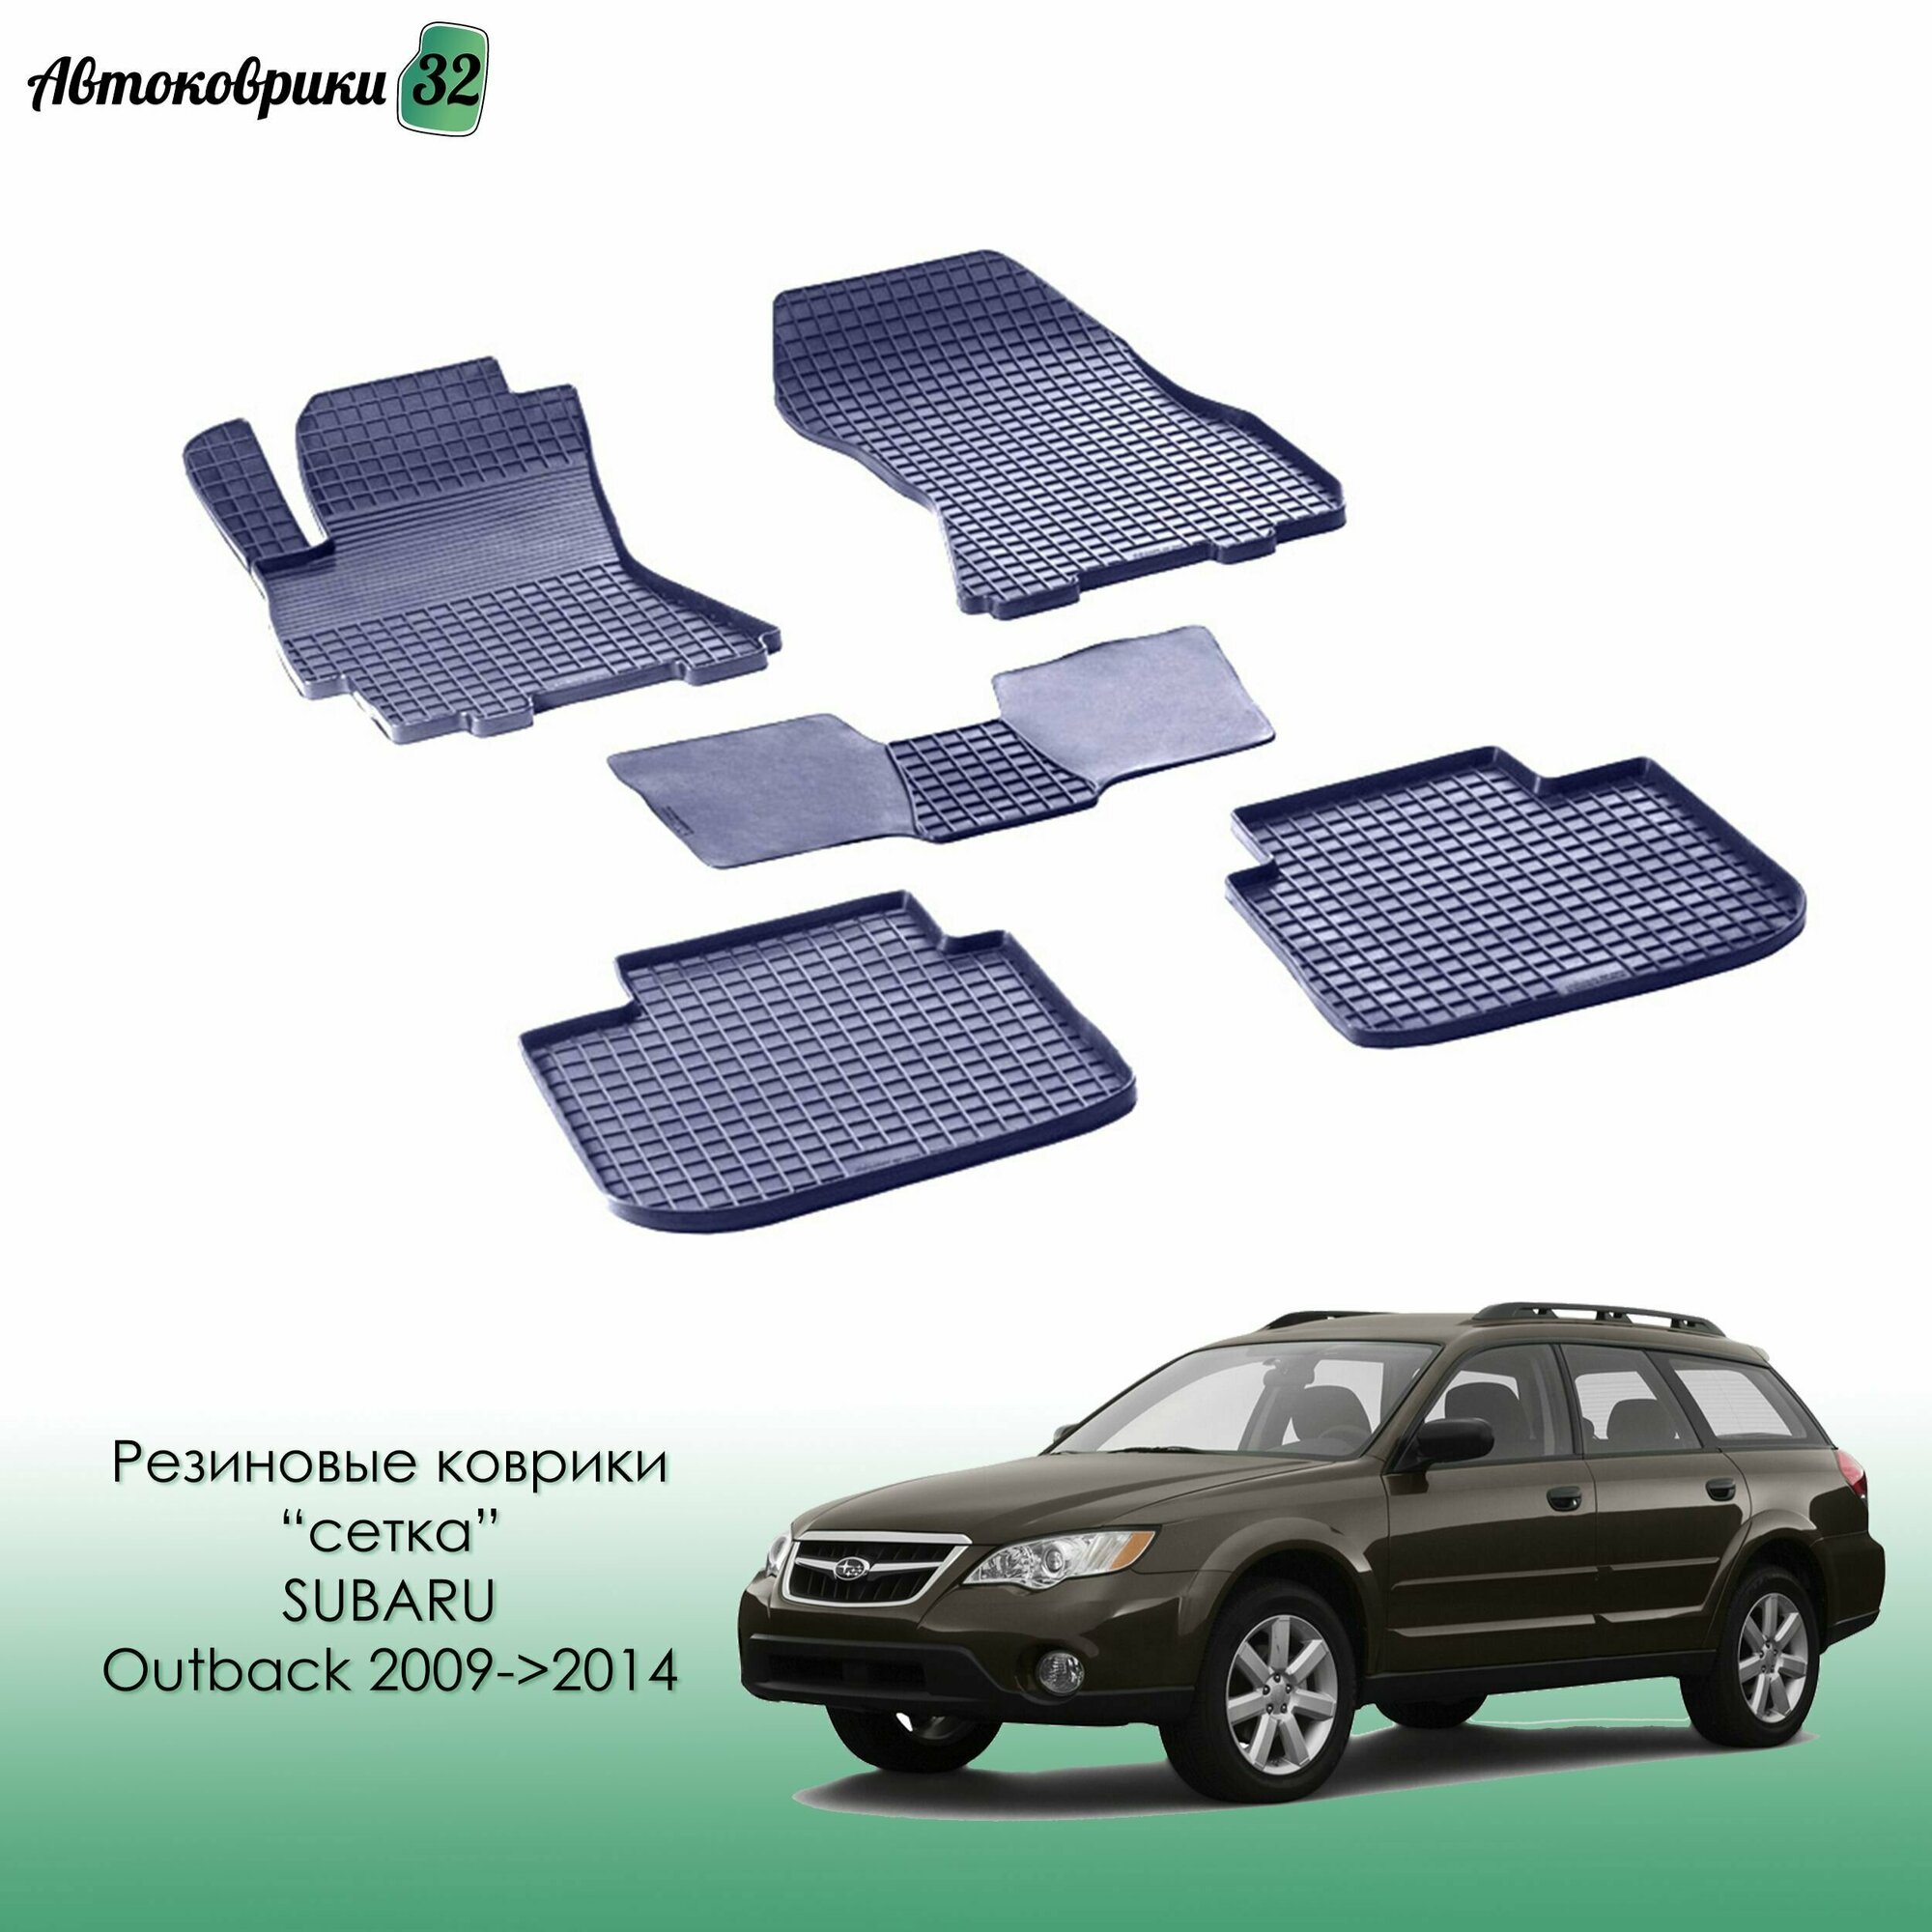 Резиновые коврики сетка для Subaru Outback / Legacy 2009->2014 / Субару Оутбек Легаси с 2009 года